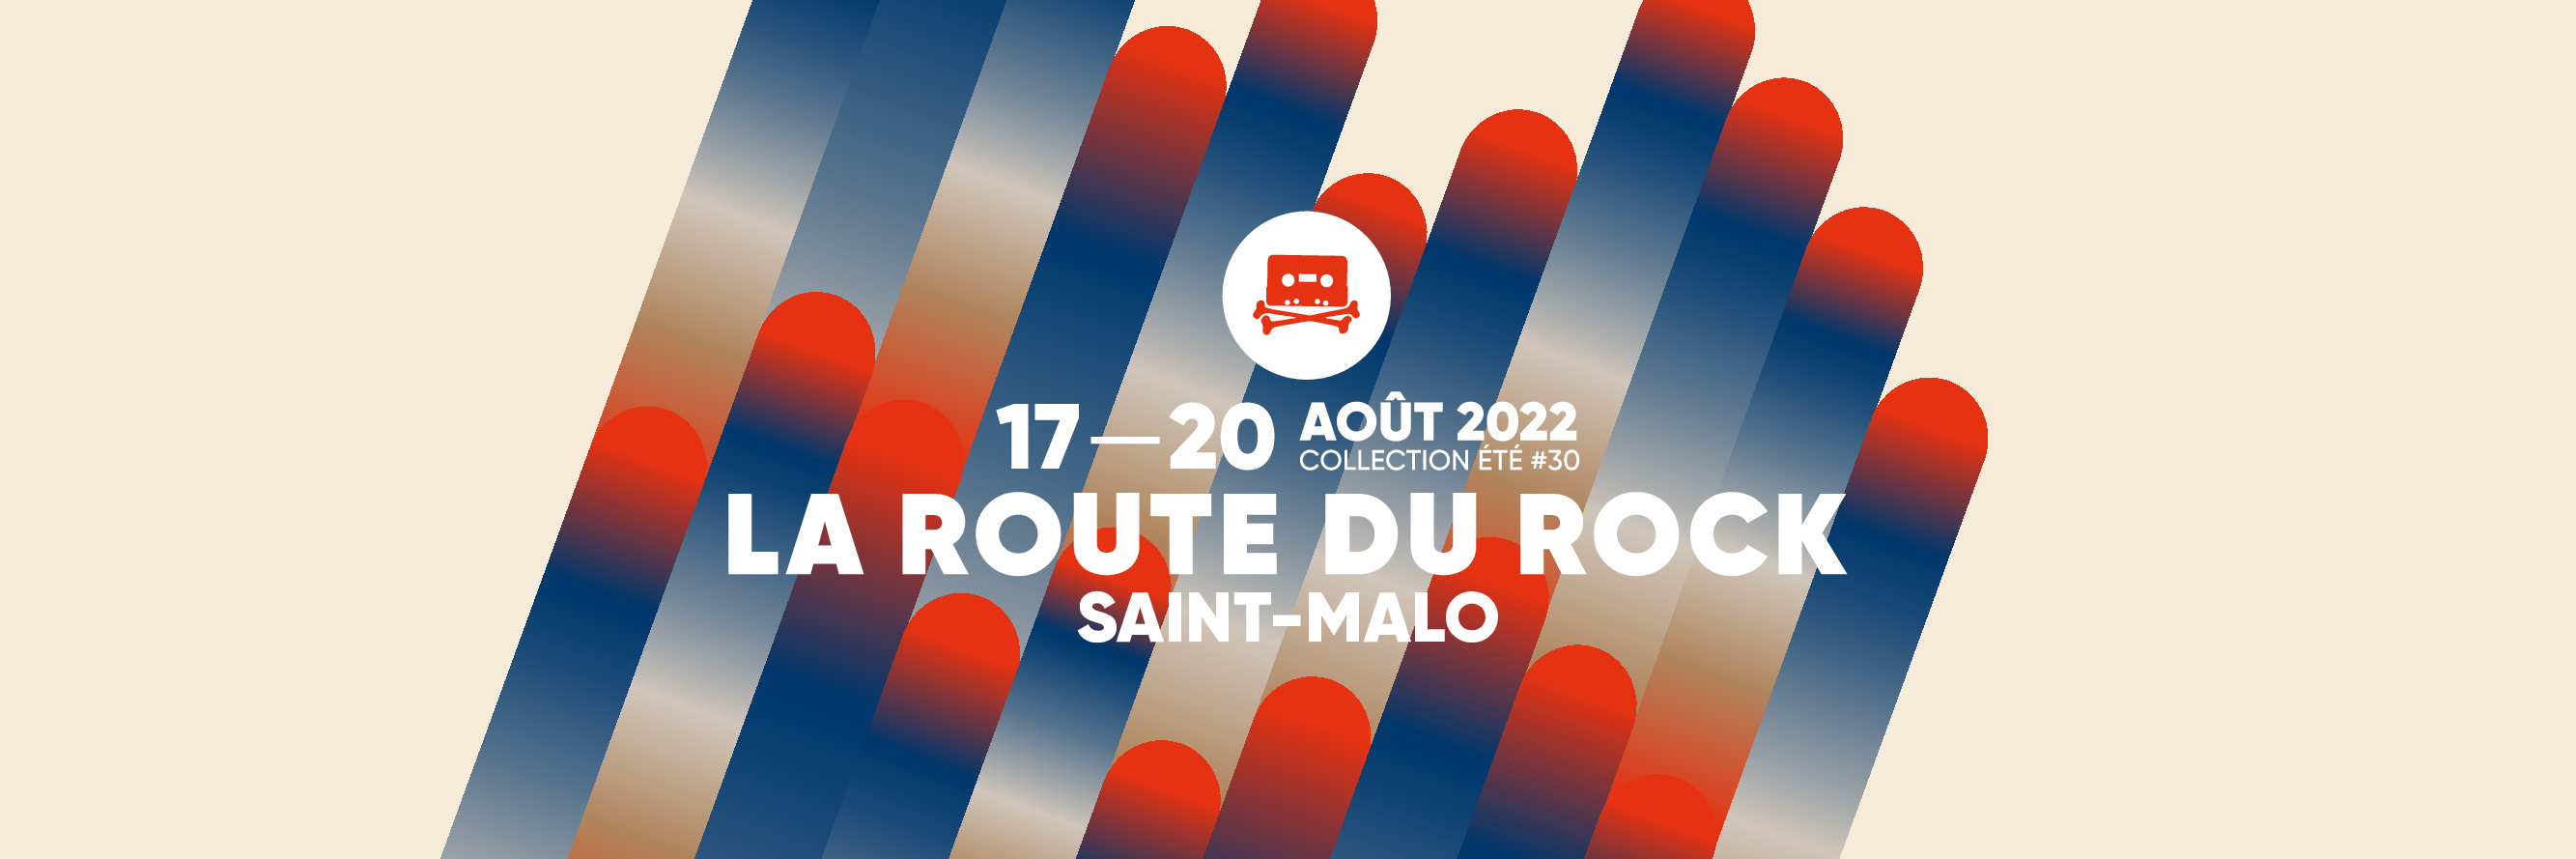 Cap sur Saint-Malo : La Route du Rock dévoile une collection été 2022 irréprochable